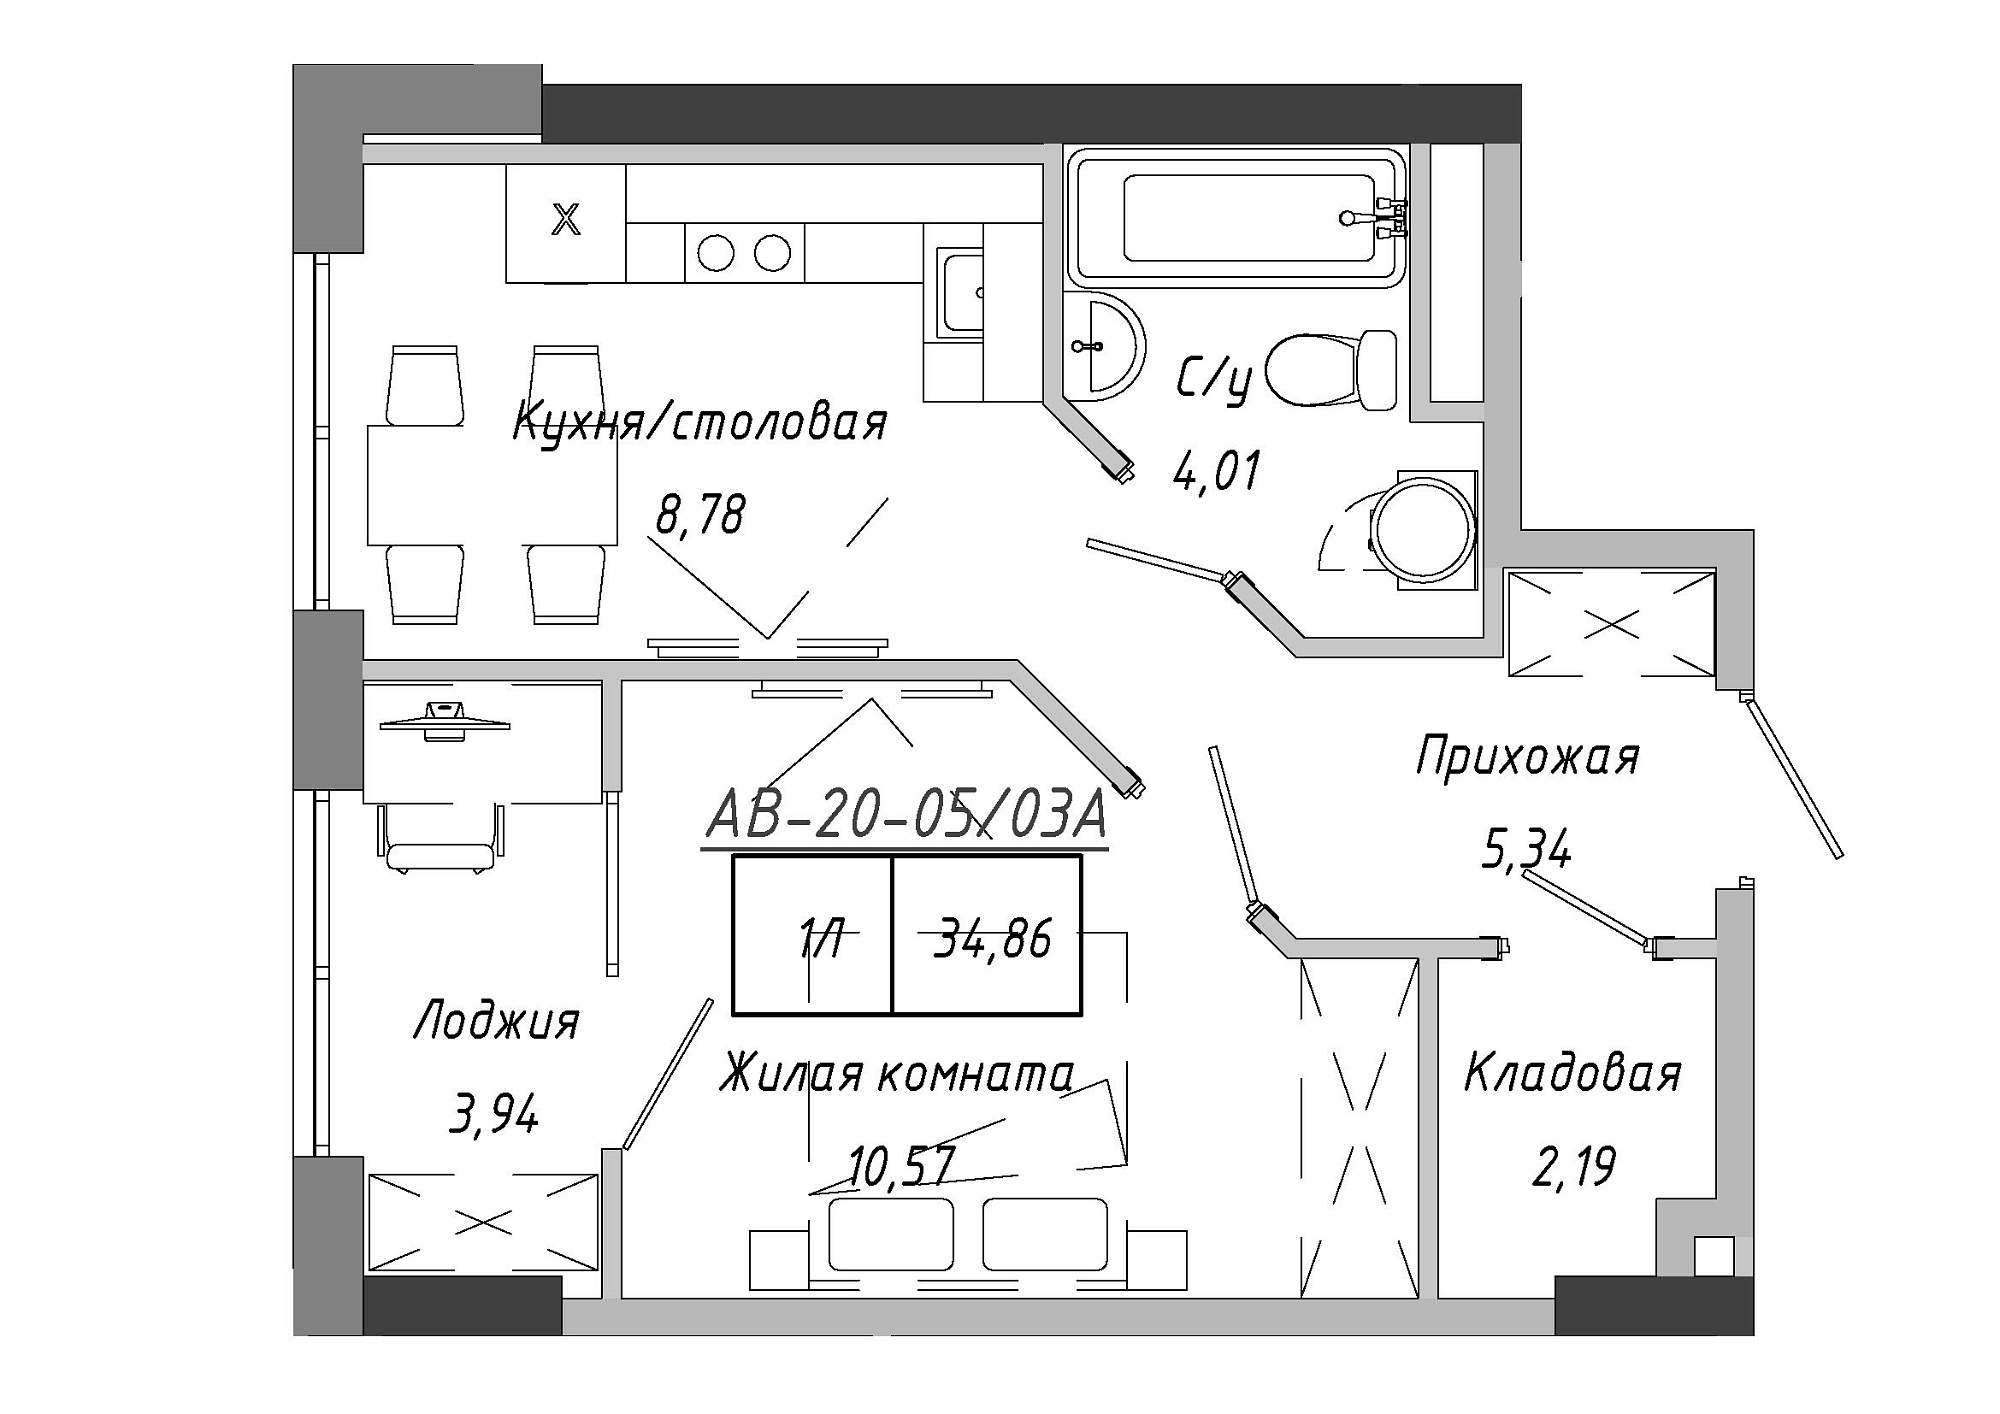 Планировка 1-к квартира площей 35.26м2, AB-20-05/0003а.